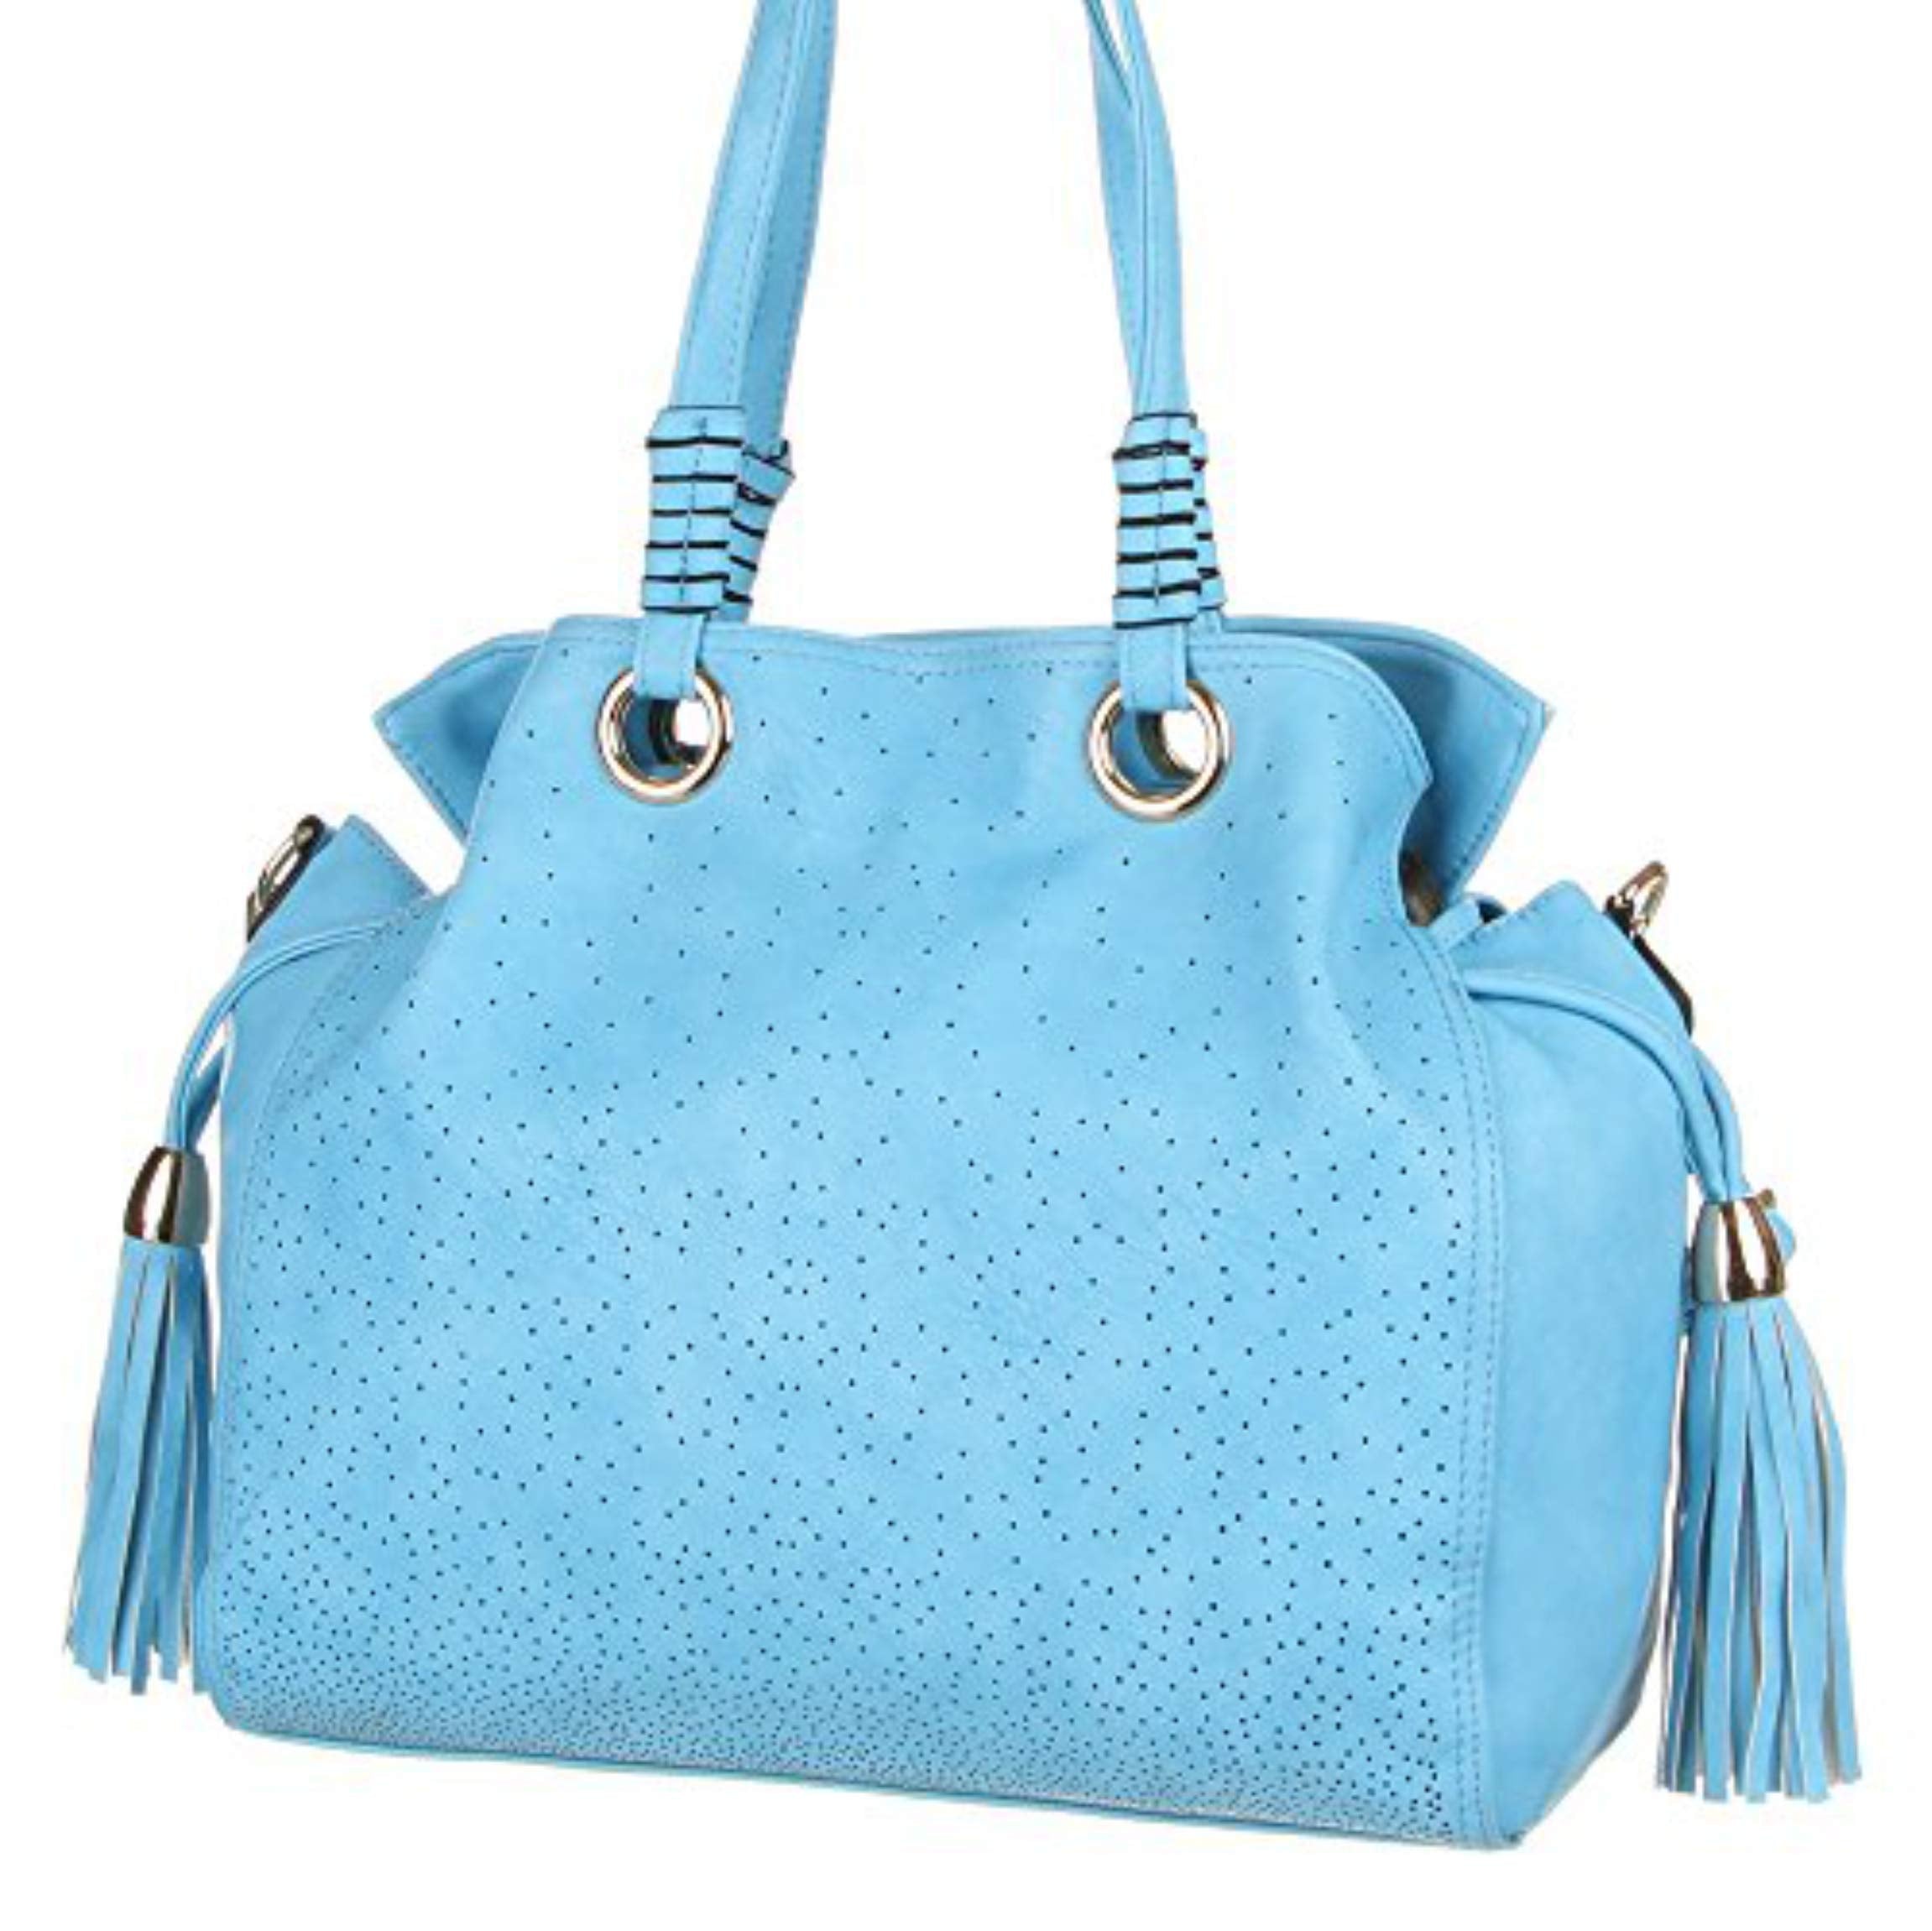 Handtasche - Schulterhandtasche Synthetik in hochwertiger Lederoptik TA-H-8021 Damen Tasche Henkeltasche Schultertasche Umhängetasche (Blue)